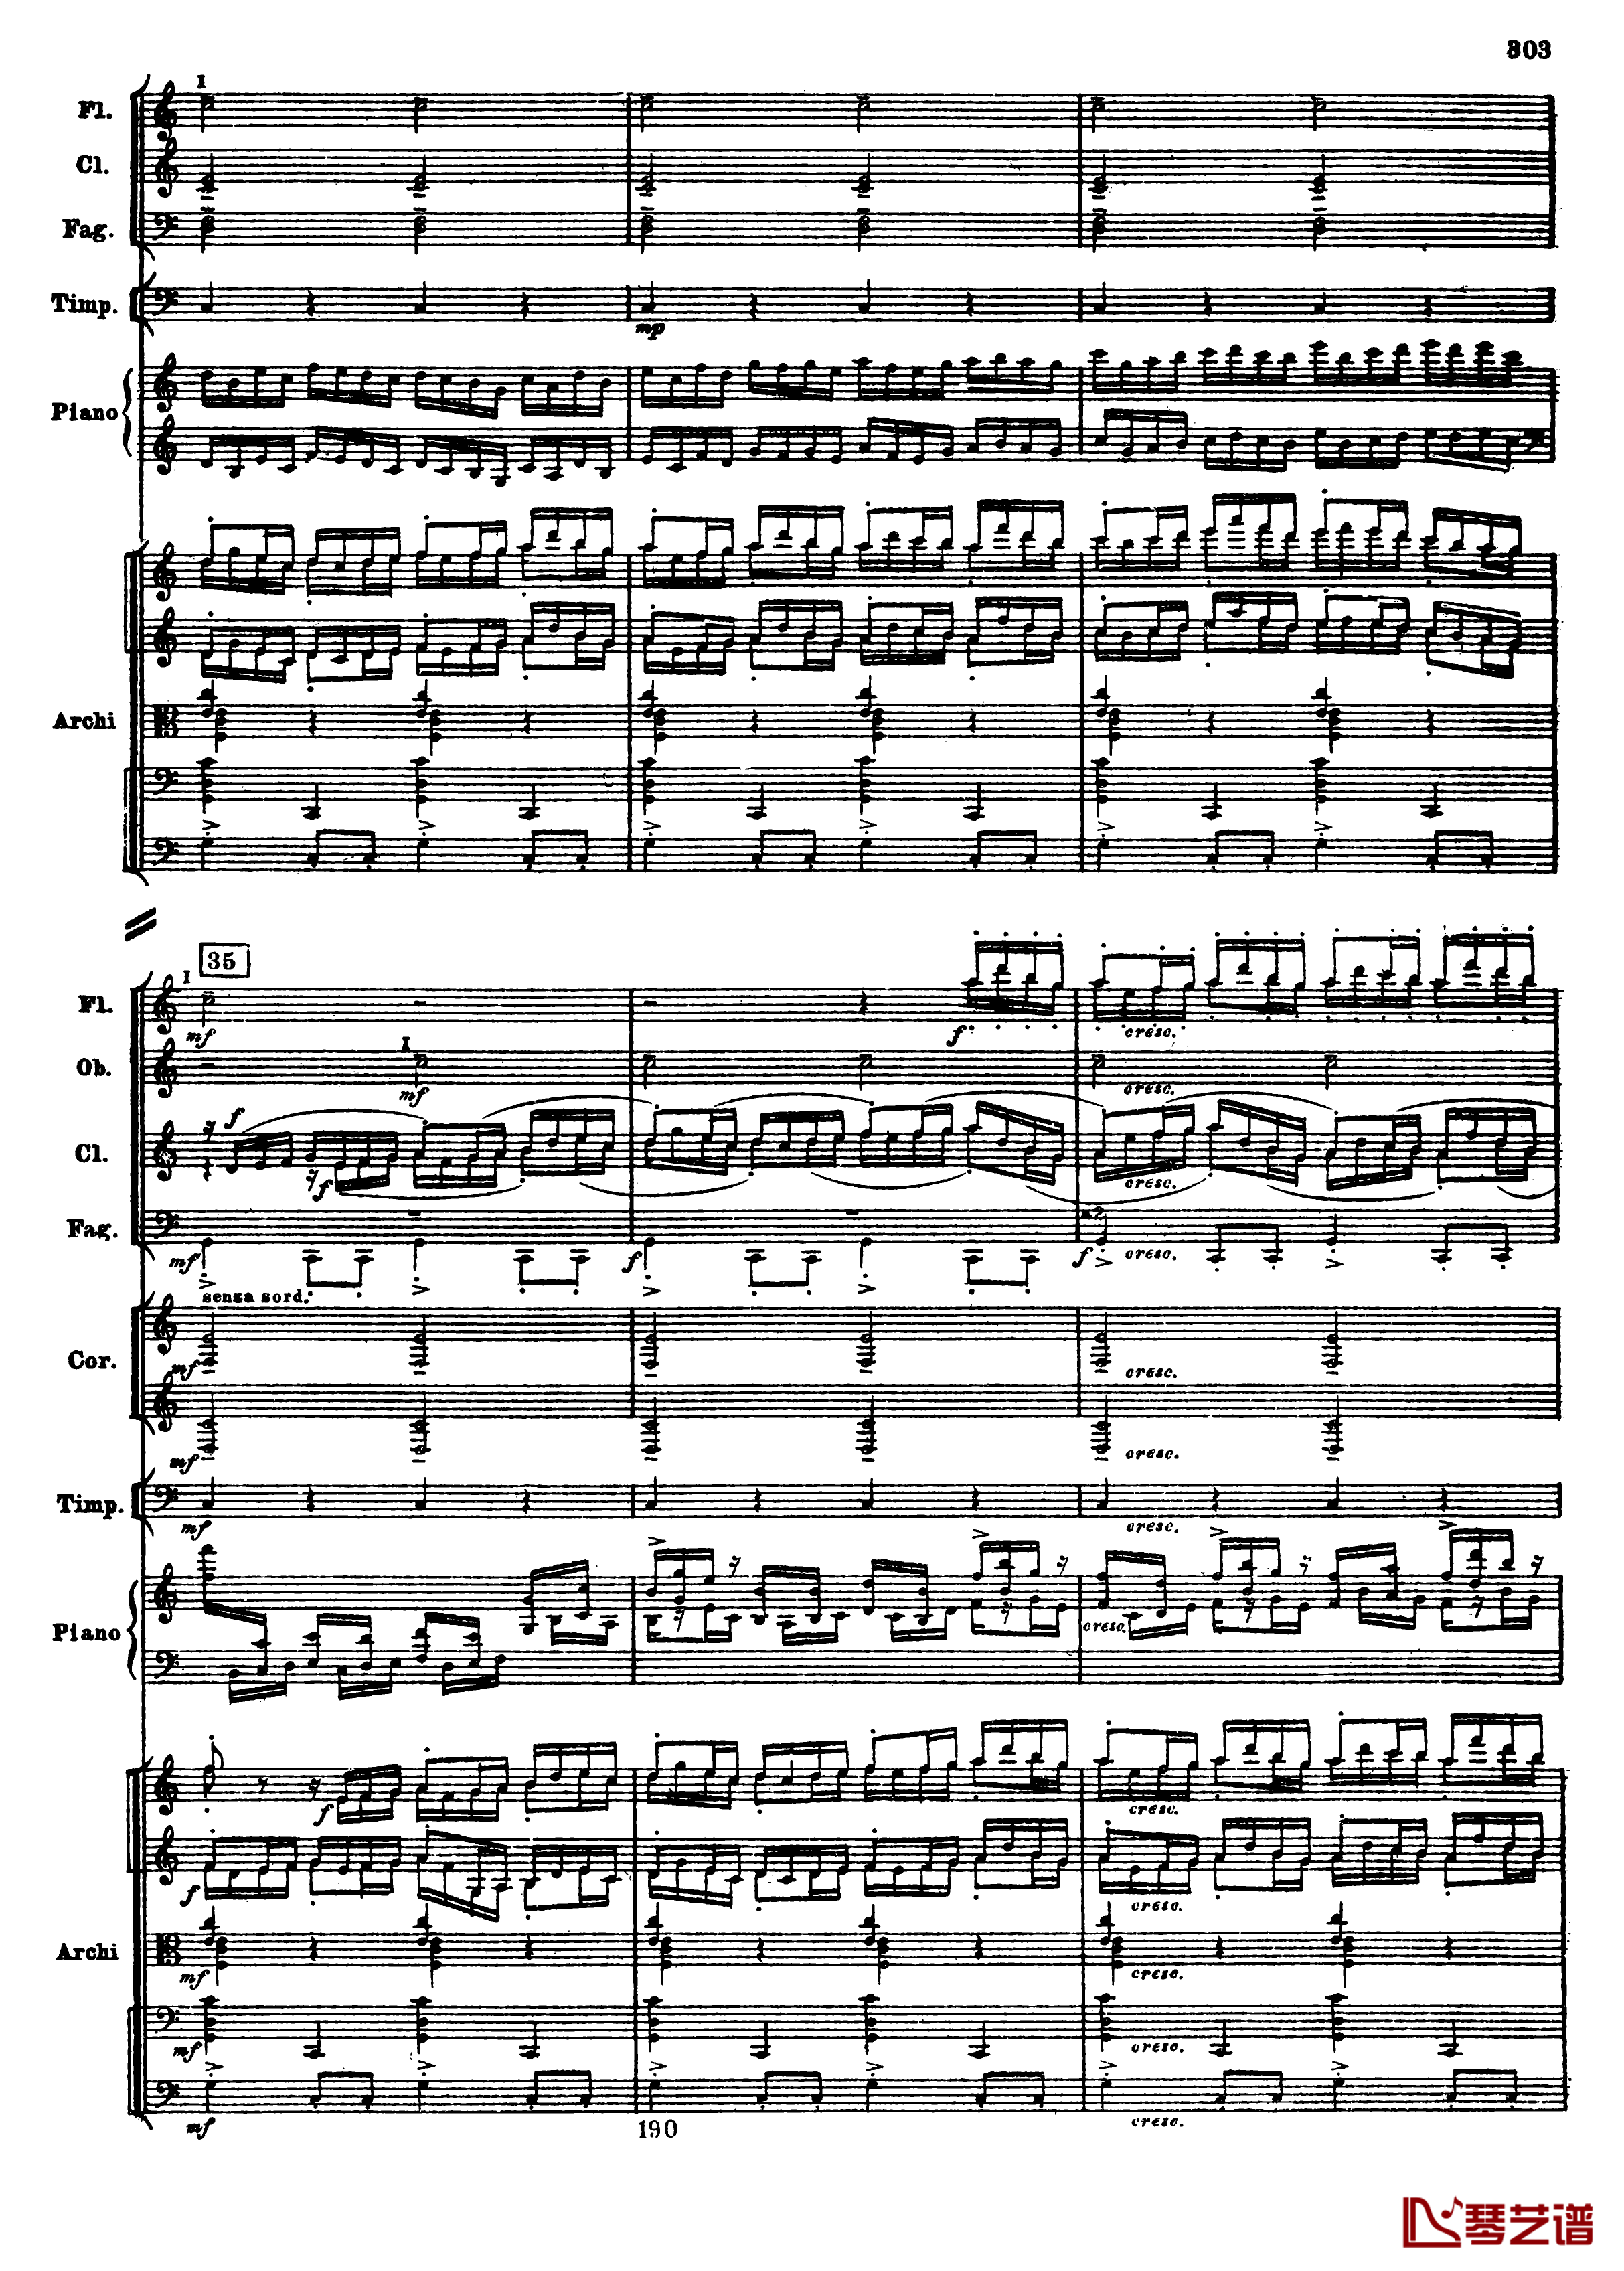 普罗科菲耶夫第三钢琴协奏曲钢琴谱-总谱-普罗科非耶夫35